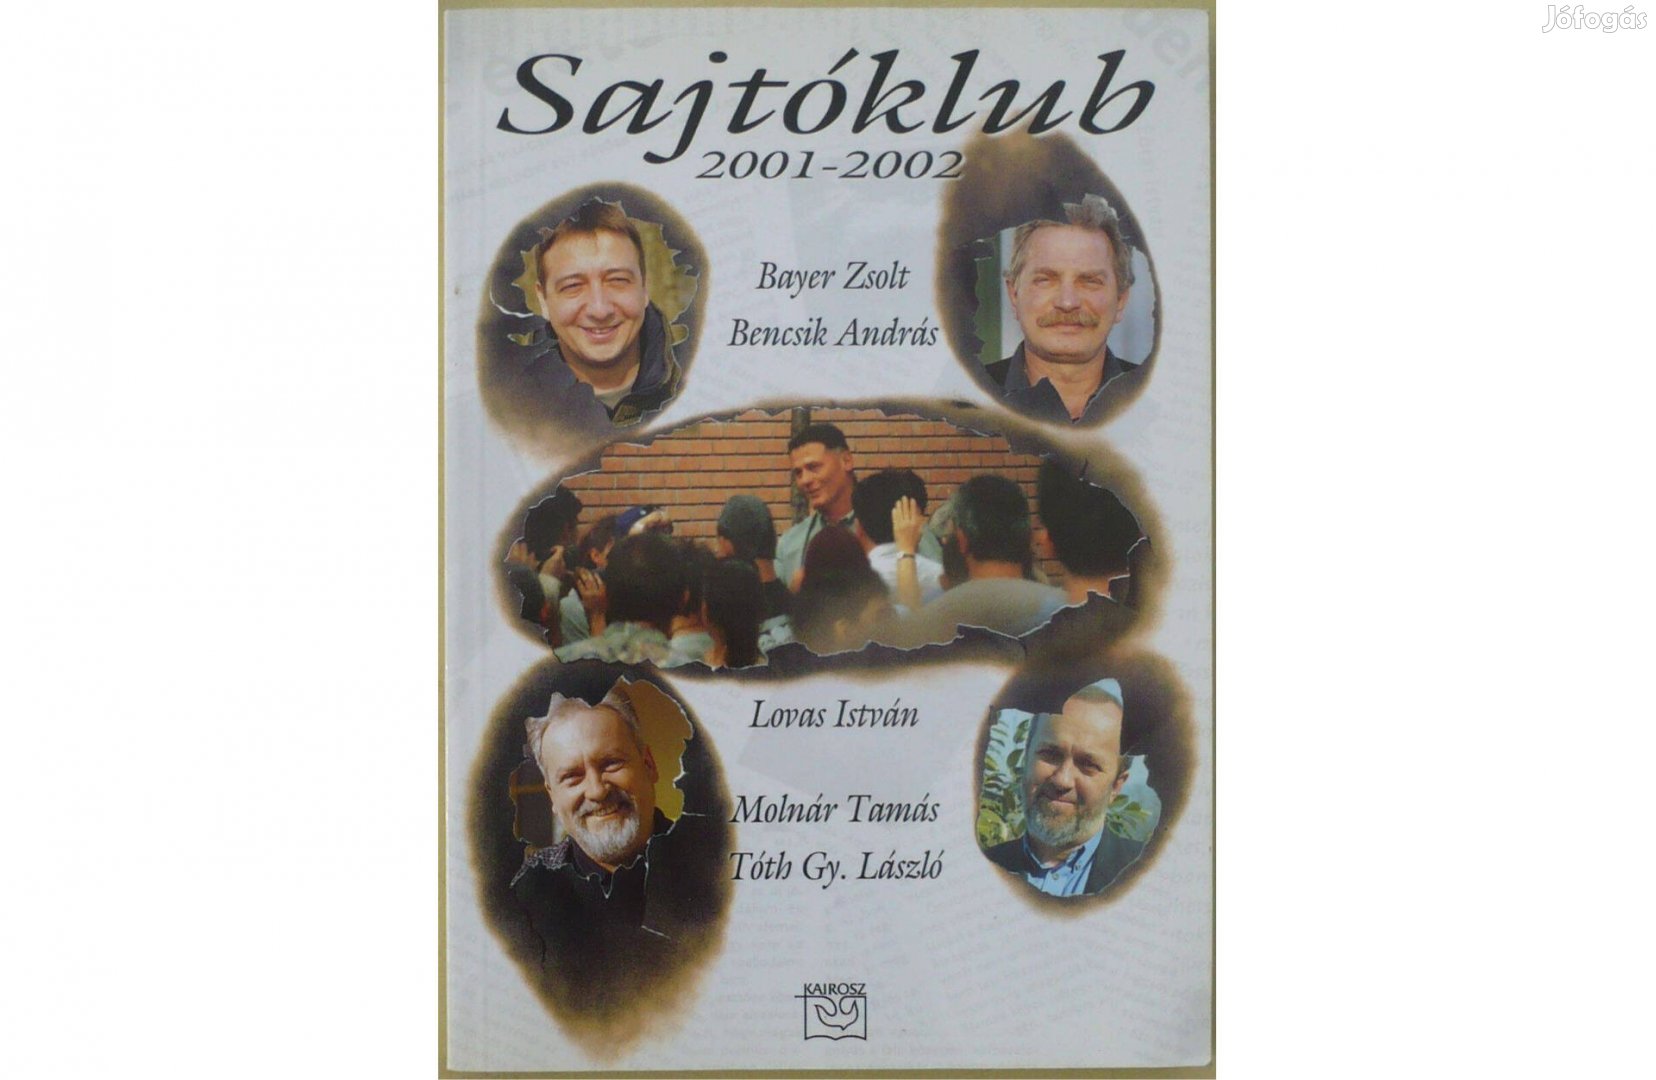 Sajtóklub 2001-2002